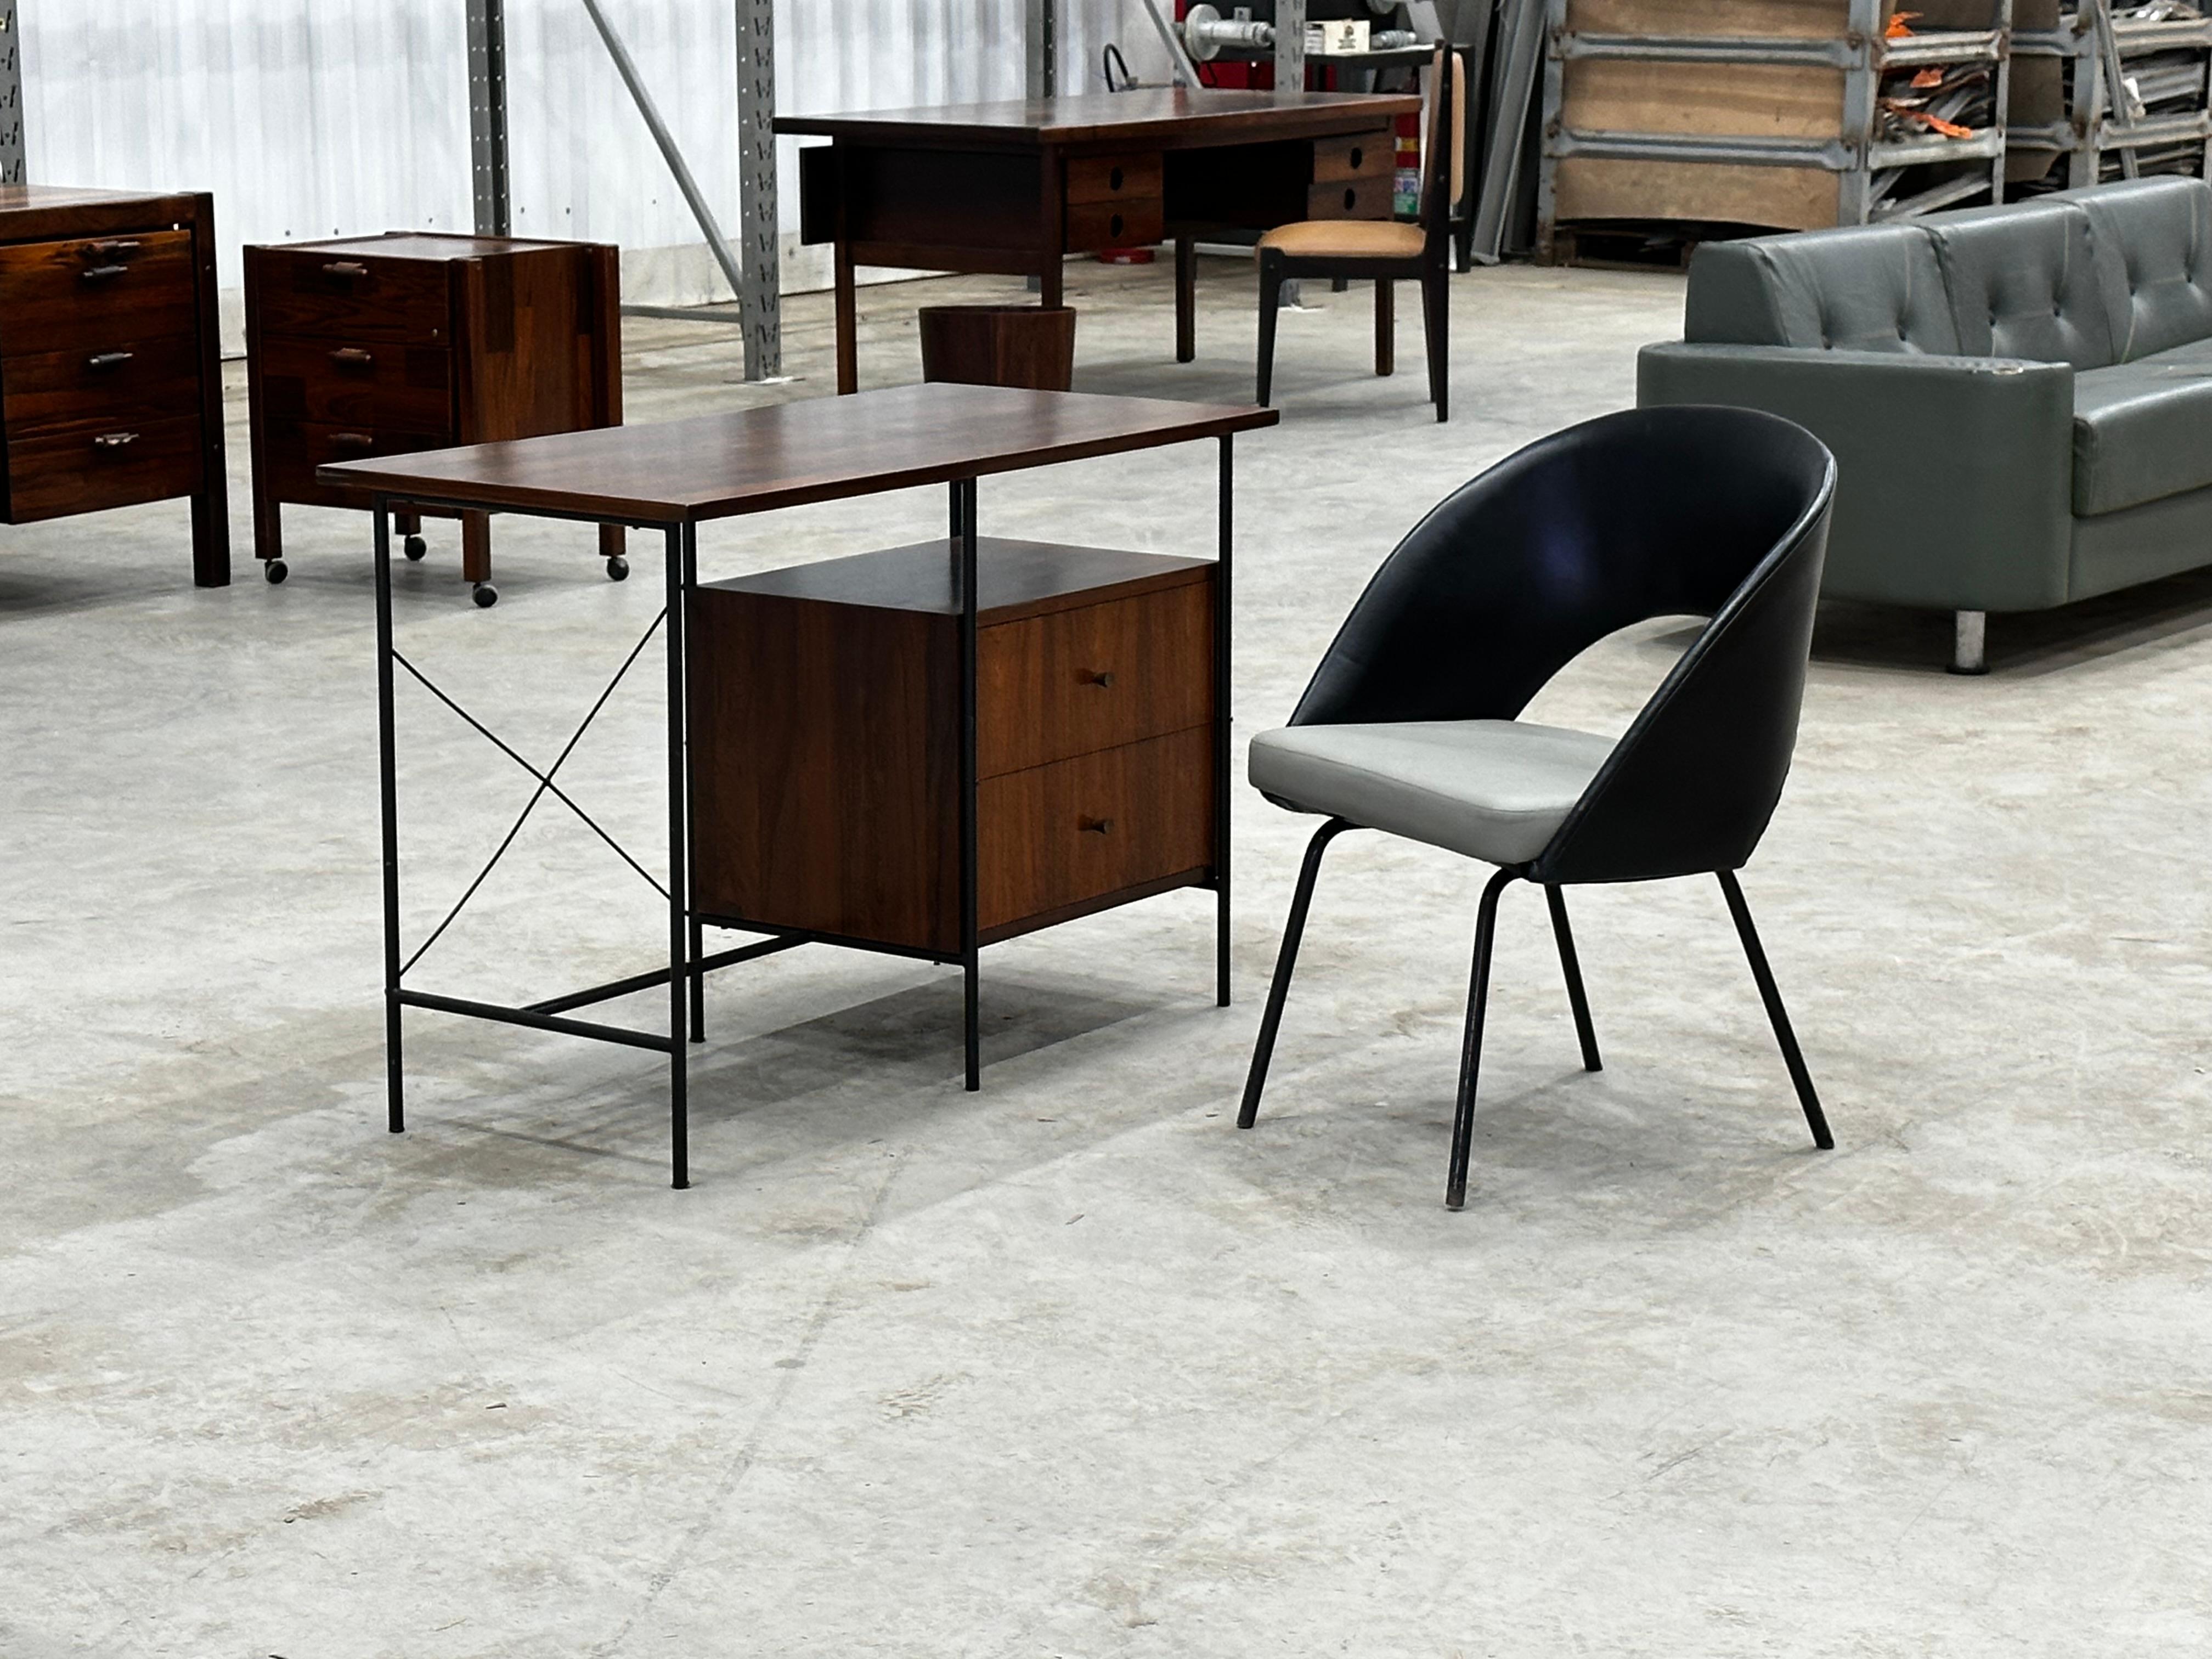 Disponible aujourd'hui, ce bureau moderne brésilien avec chaise conçu par Geraldo de Barros pour Unilabor dans les années 50 n'est rien de moins que spectaculaire !

Le bureau est fabriqué en bois de rose brésilien (également connu sous le nom de